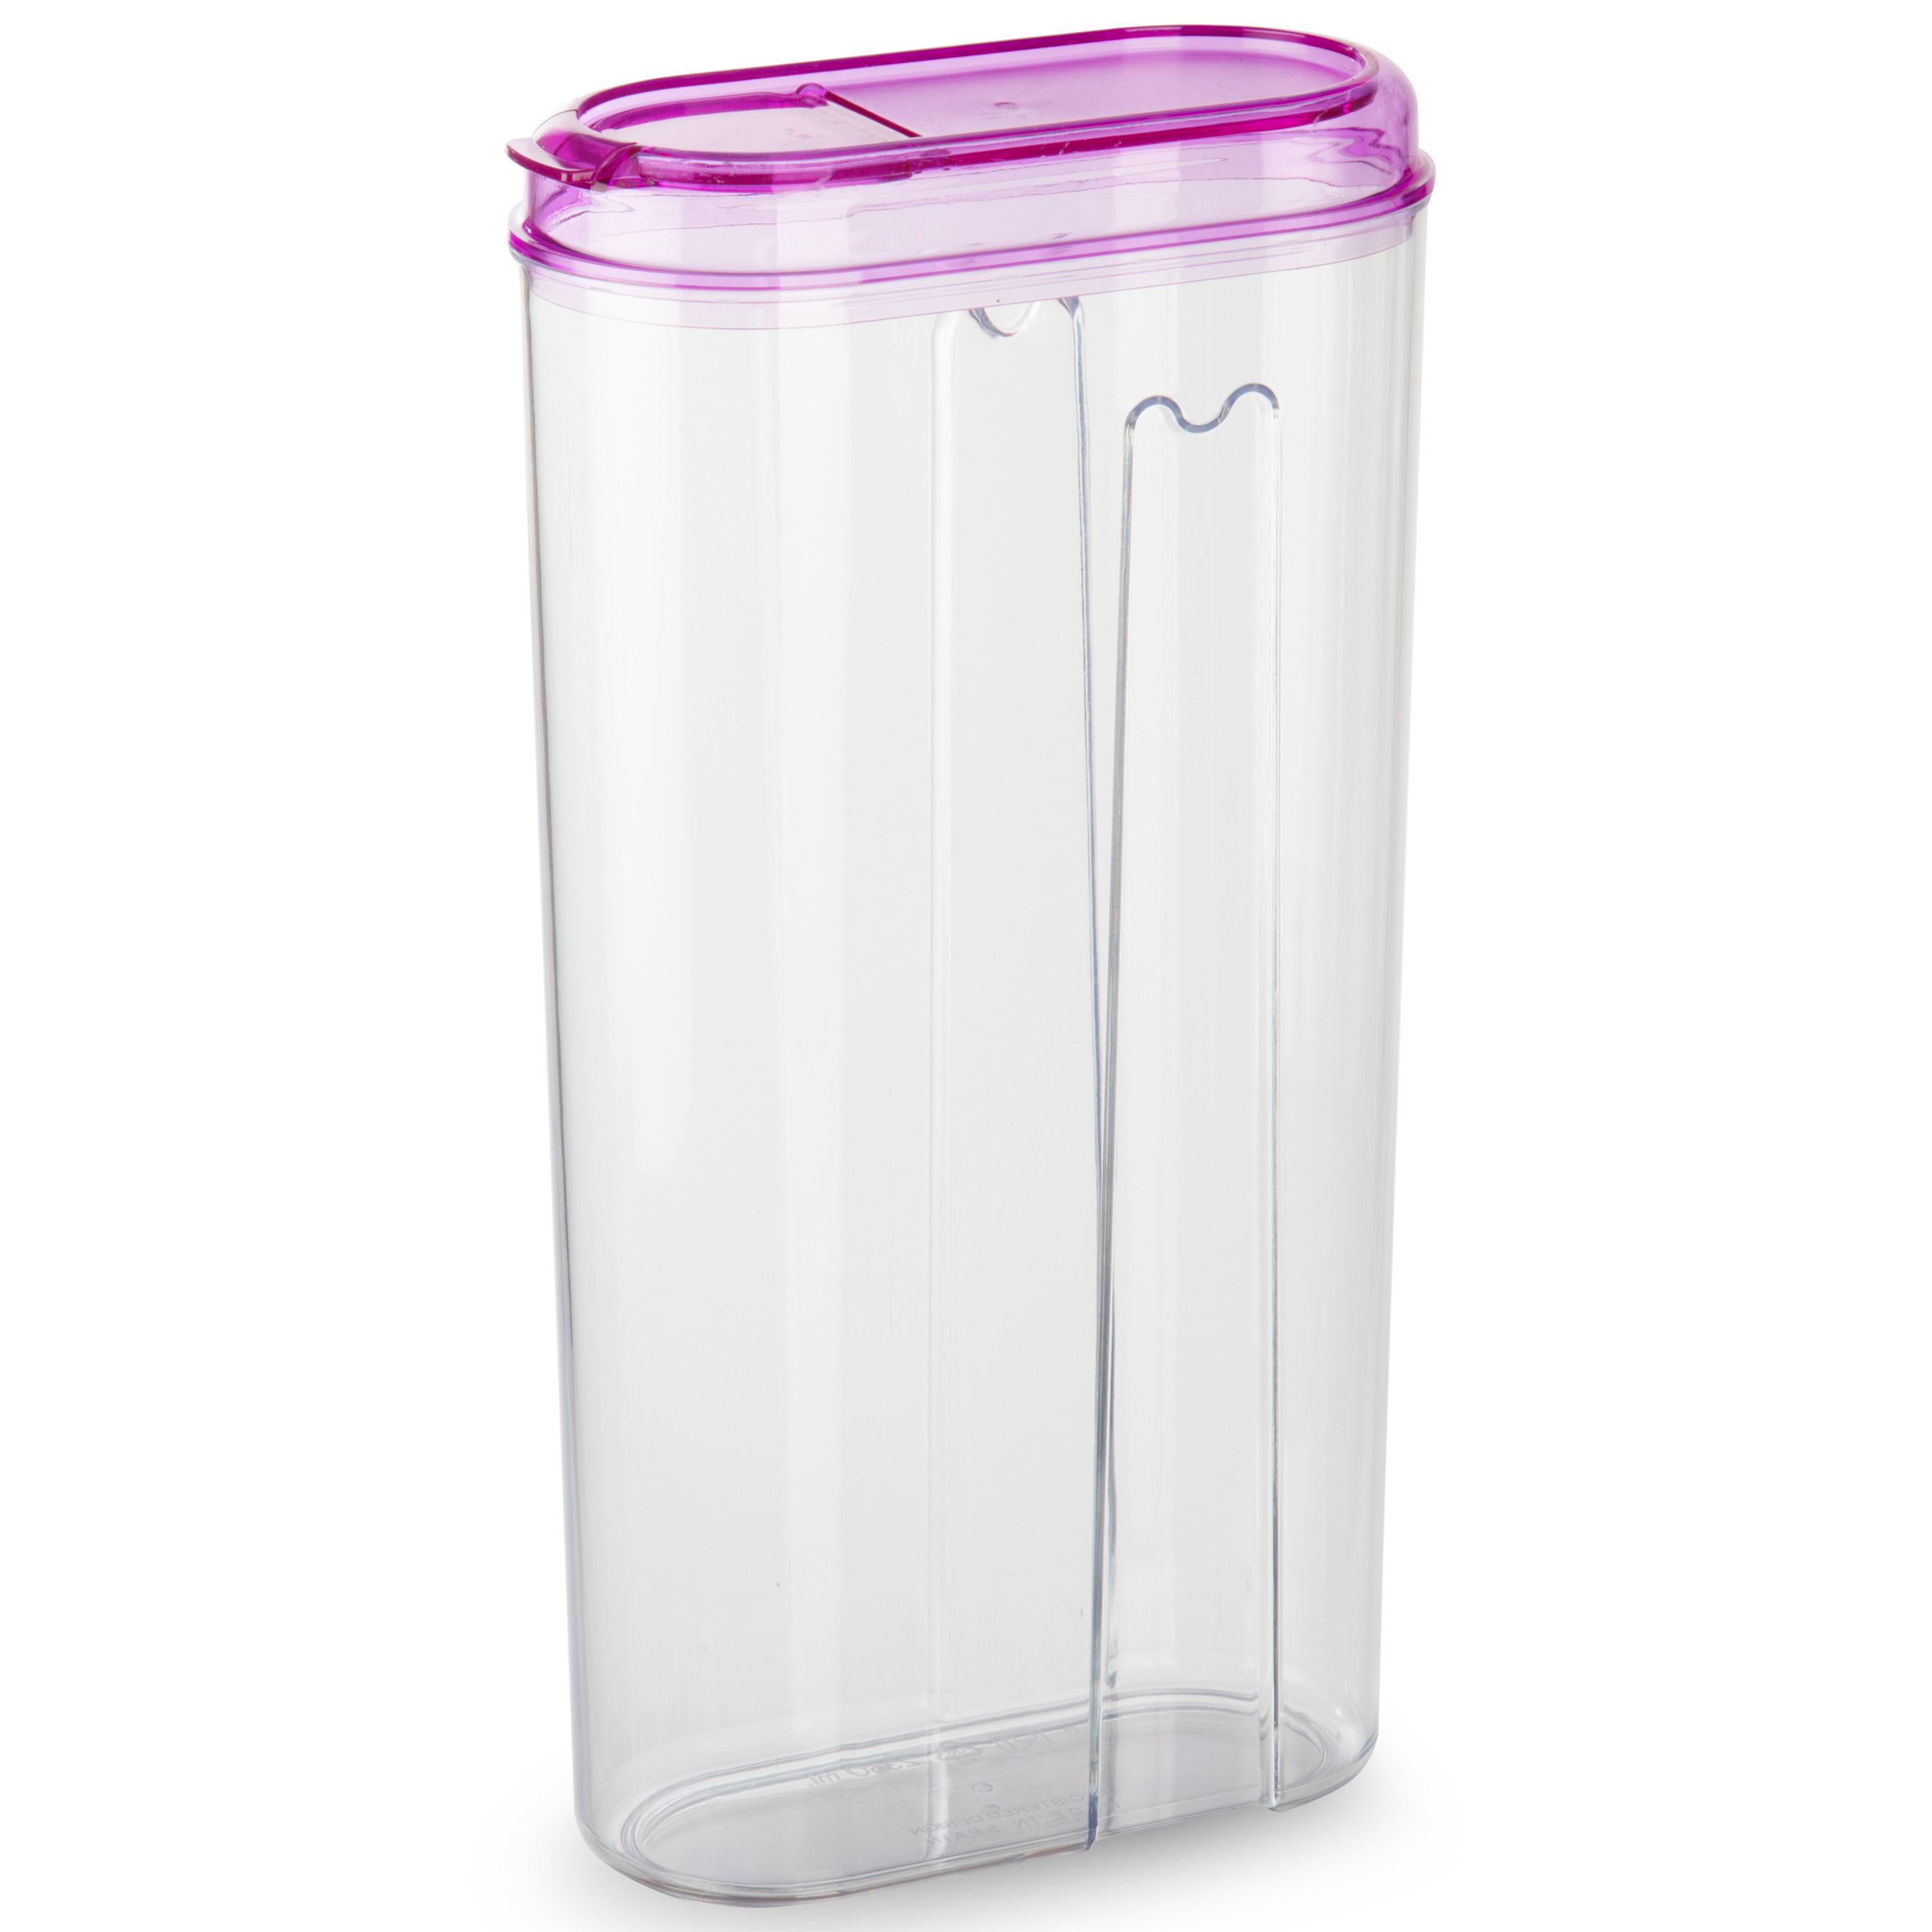 PlasticForte Voedselcontainer strooibus - roze - 2350 ml - kunststof - 15 x 8 x 30 cm - voorraadpot -